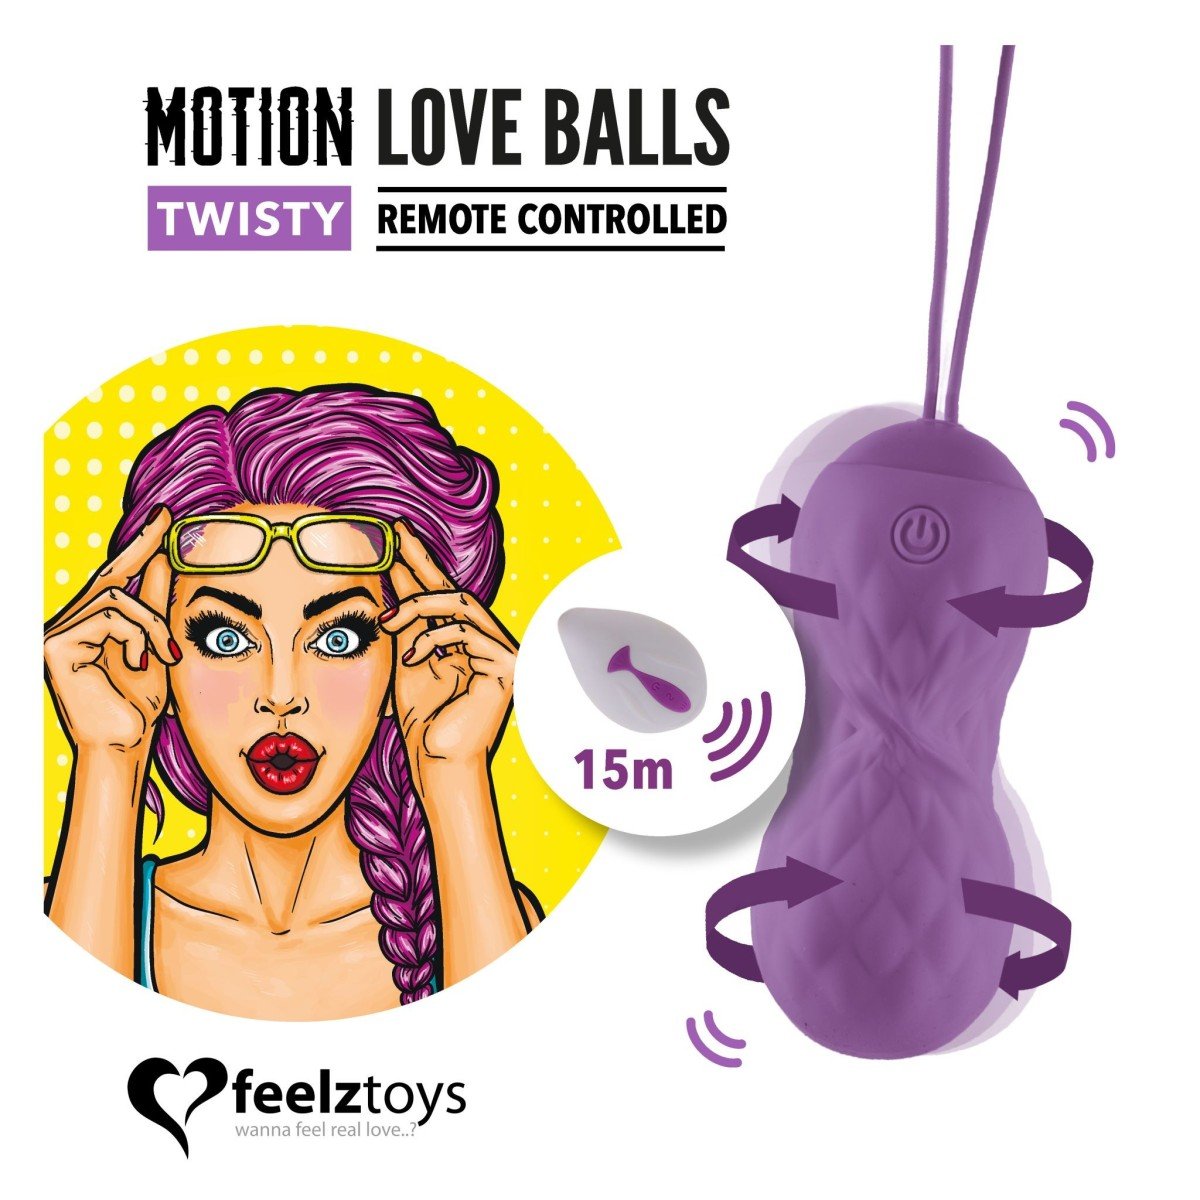 FeelzToys Twisty Remote Controlled Motion Love Balls, silikonové vaginální kuličky s dálkovým ovládáním s průměrem 3,4 cm